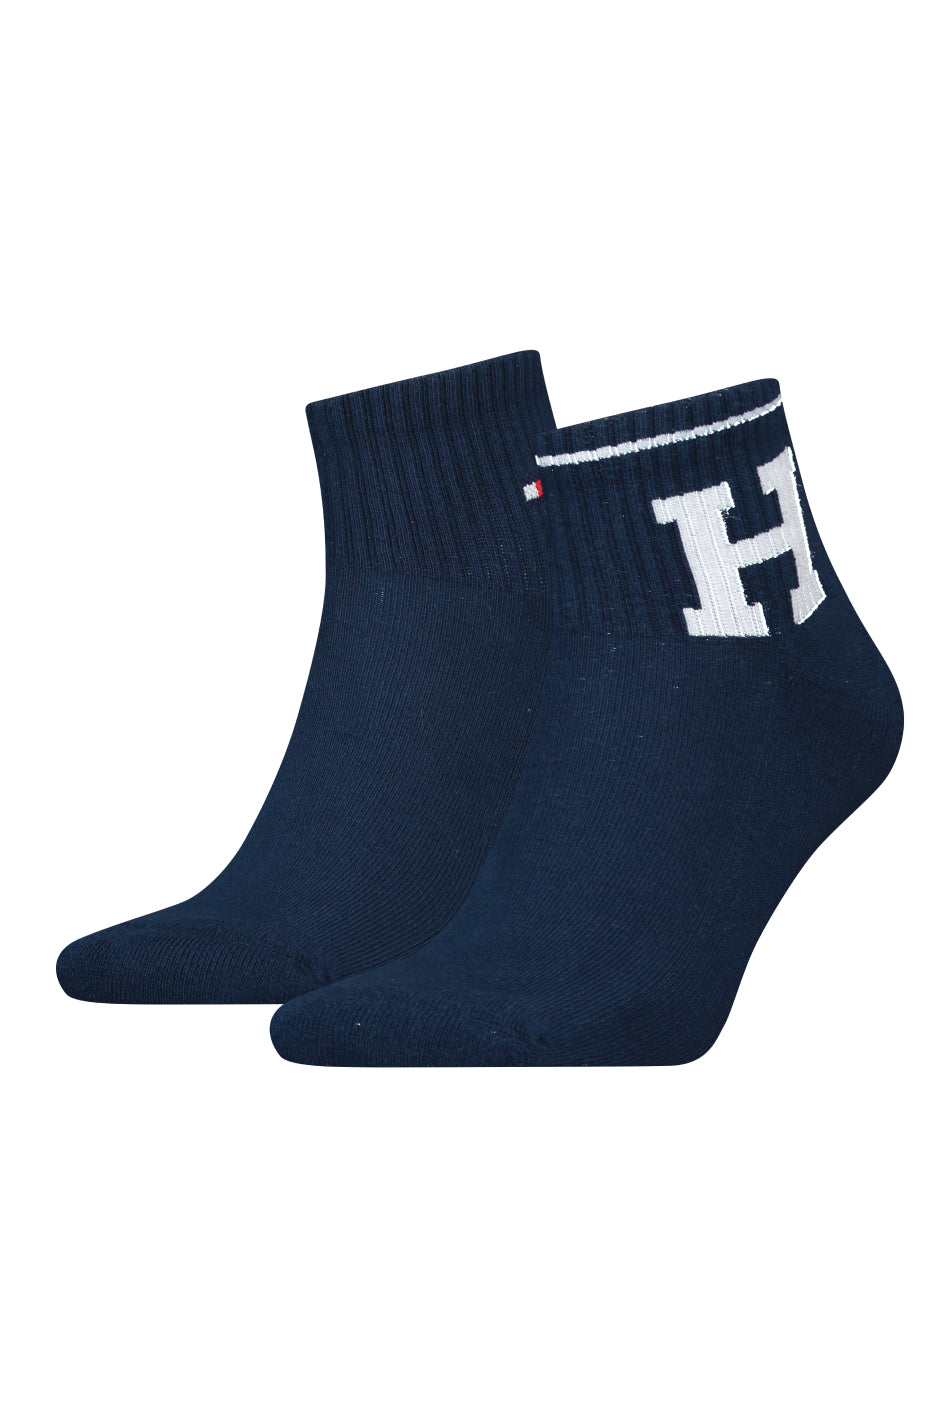 Tommy Hilfiger 2 Pack Men's Quarter Sport Sock